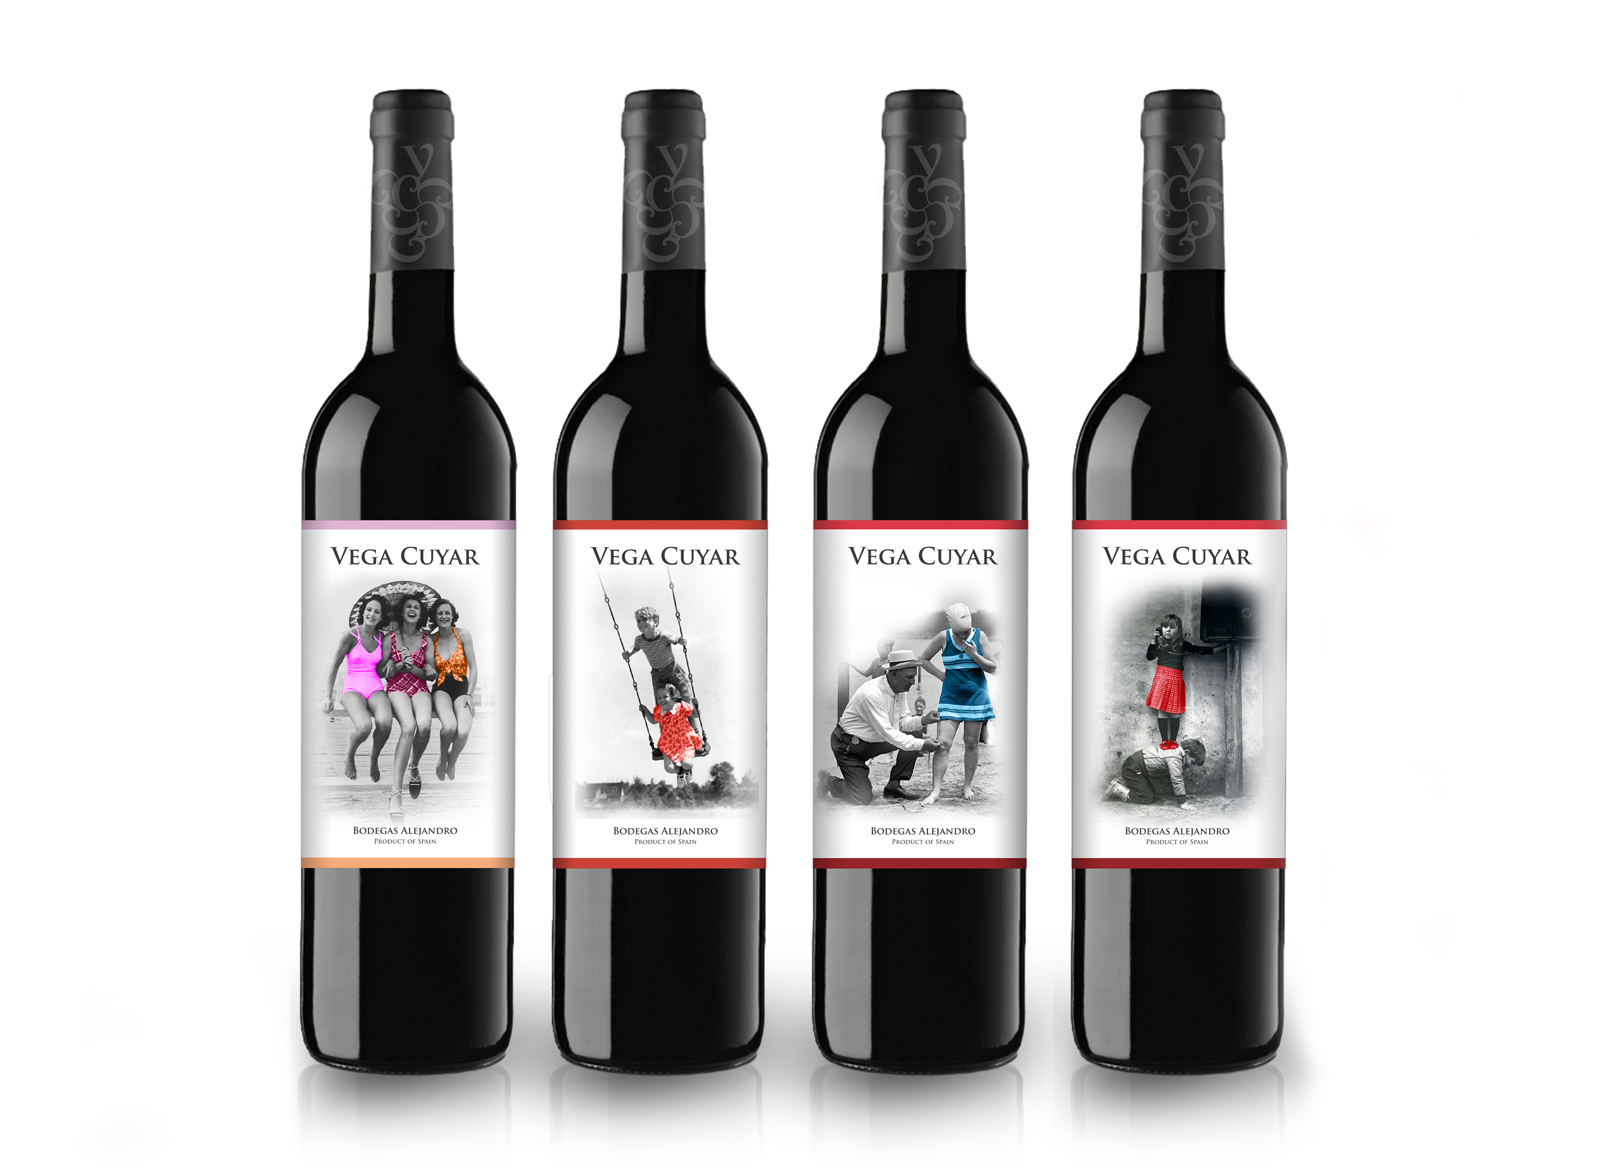 Diseño gráfico y creativo de etiquetas y packaging de vino para VEGA CUYAR II